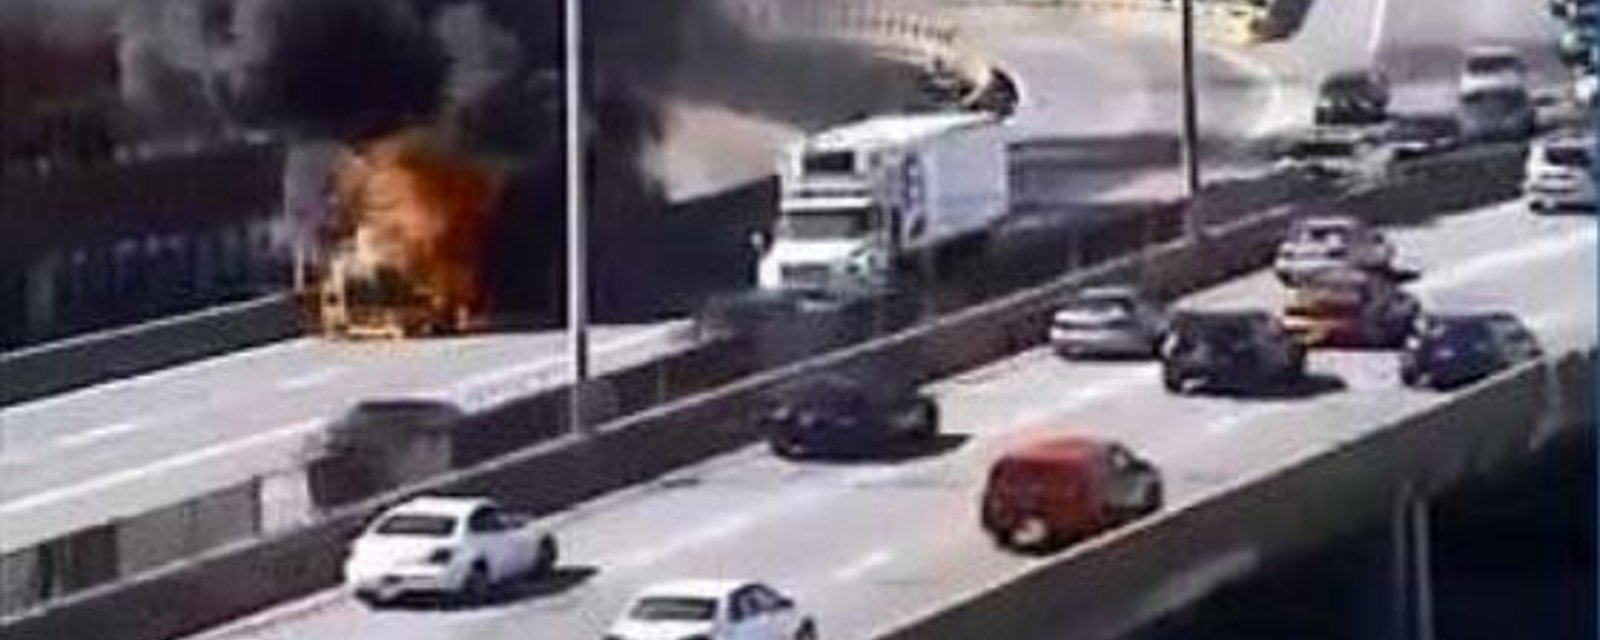 DERNIÈRE HEURE: Un camion en feu force la fermeture de l'autoroute 40